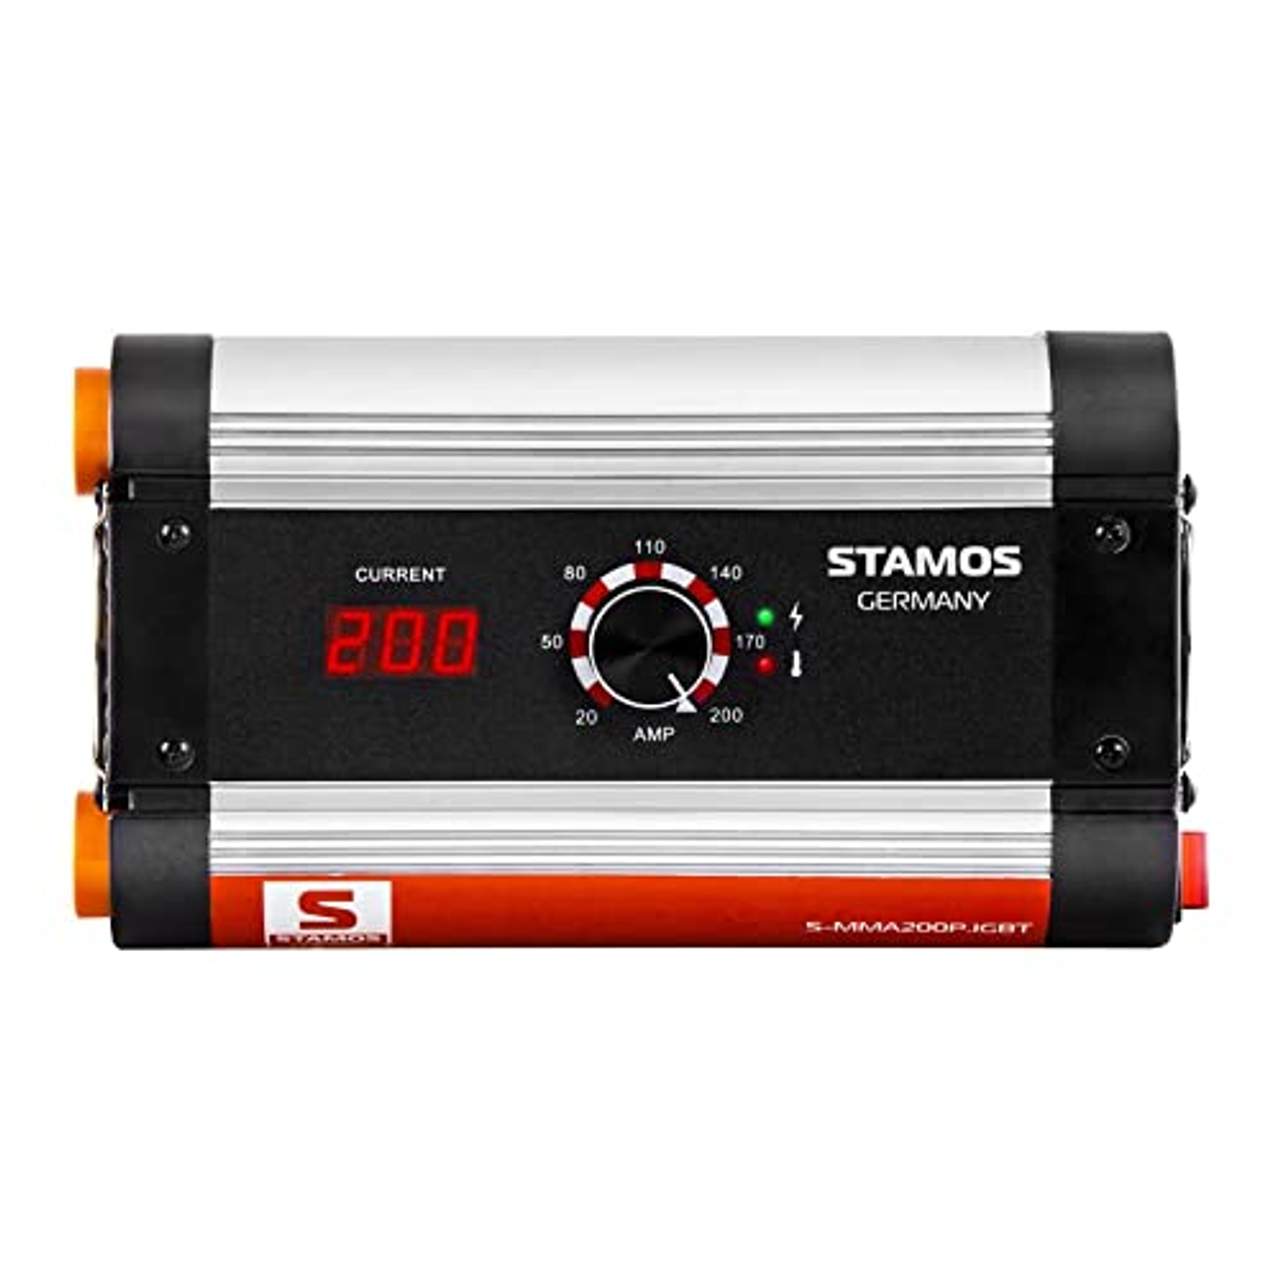 Stamos Germany S-MMA 200P.IGBT Elektroden-Schweißgerät 20-200